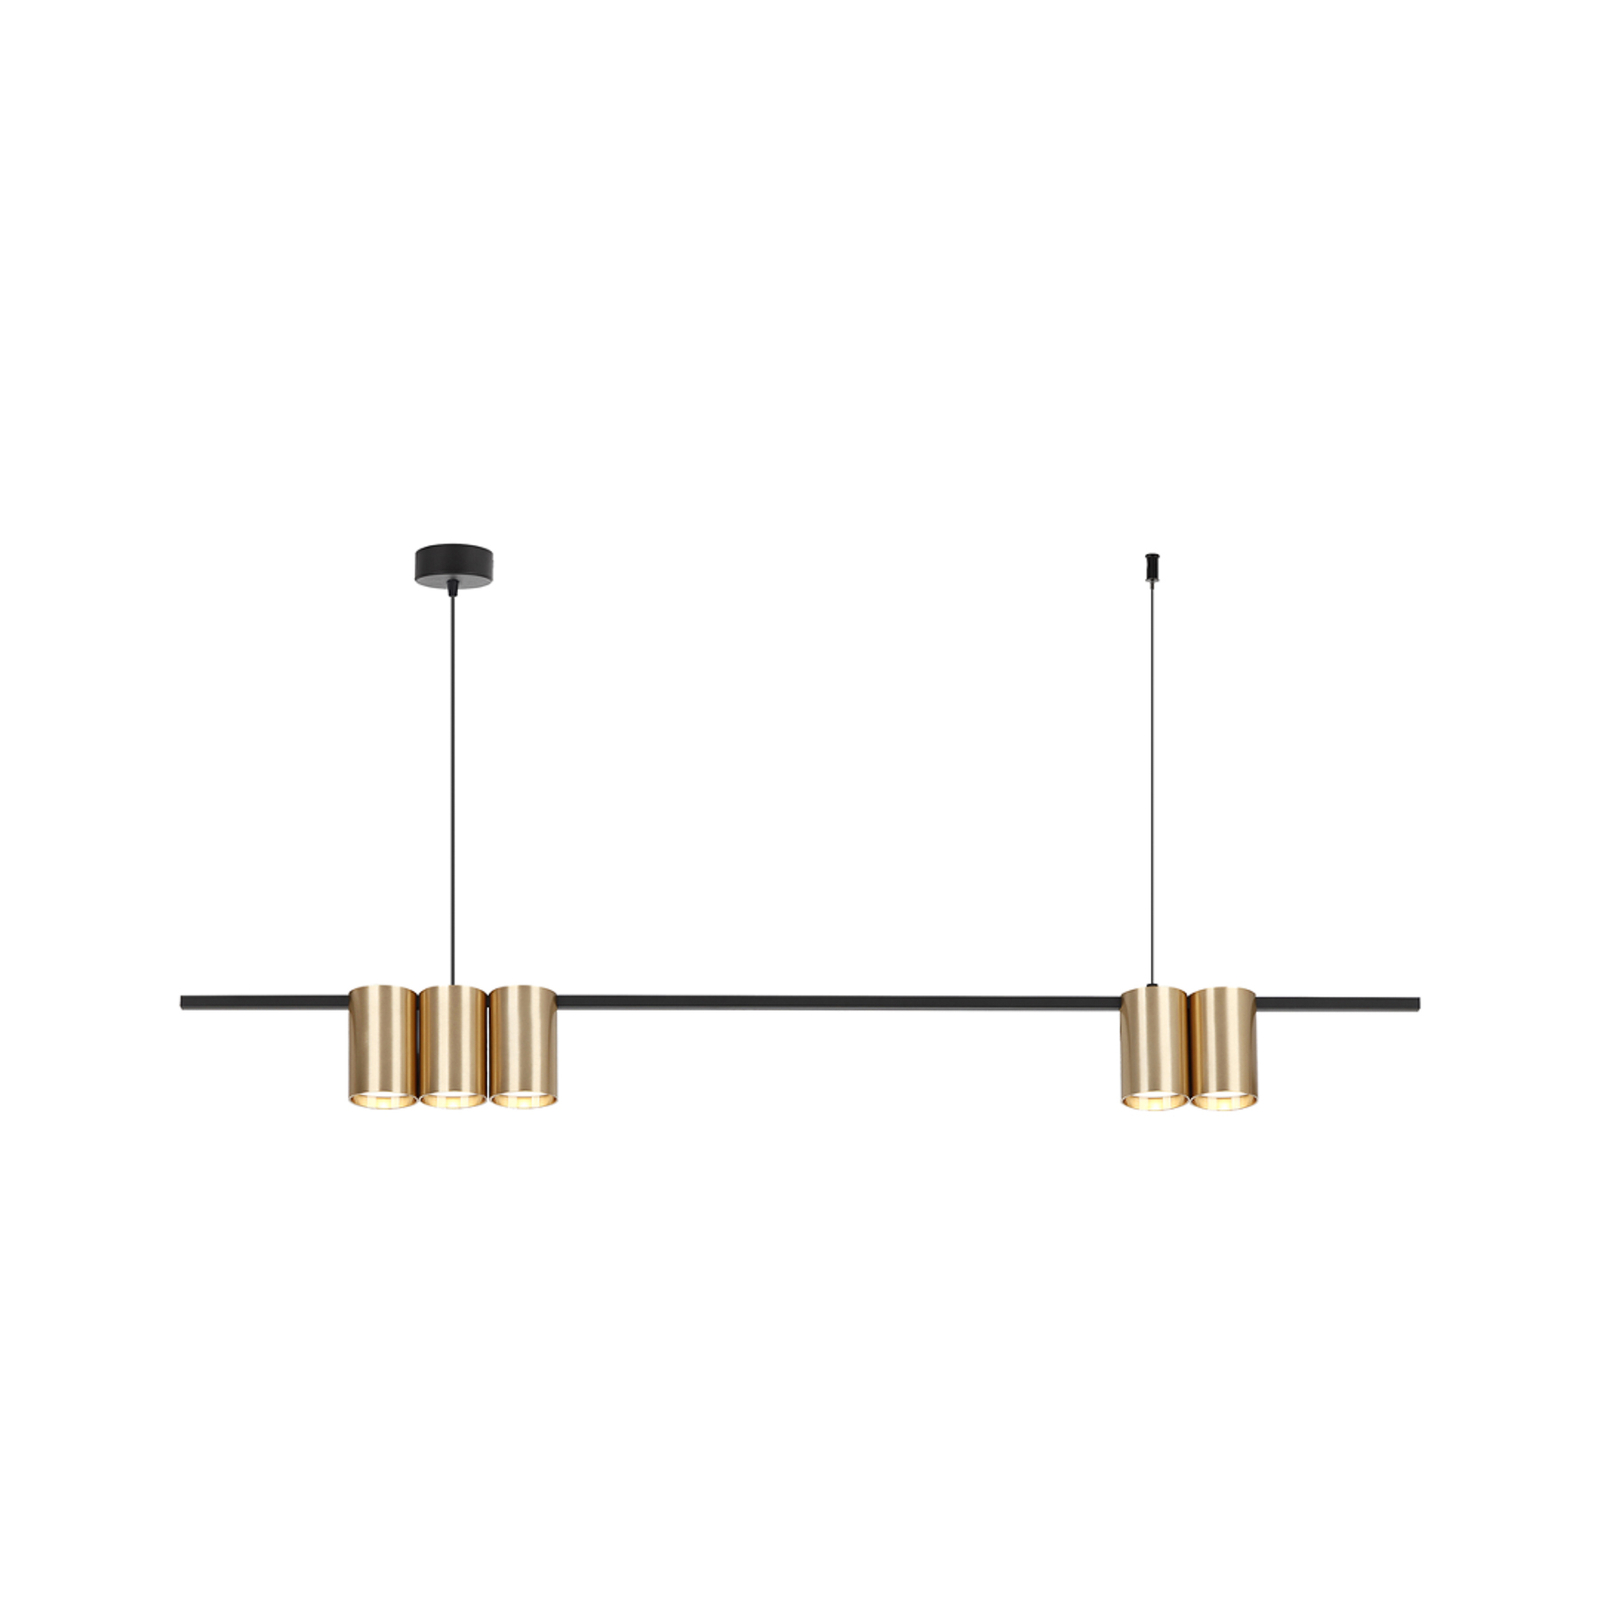 Lampă suspendată Genesis, aluminiu negru/auriu, 5 x GU10, lungime 100 cm